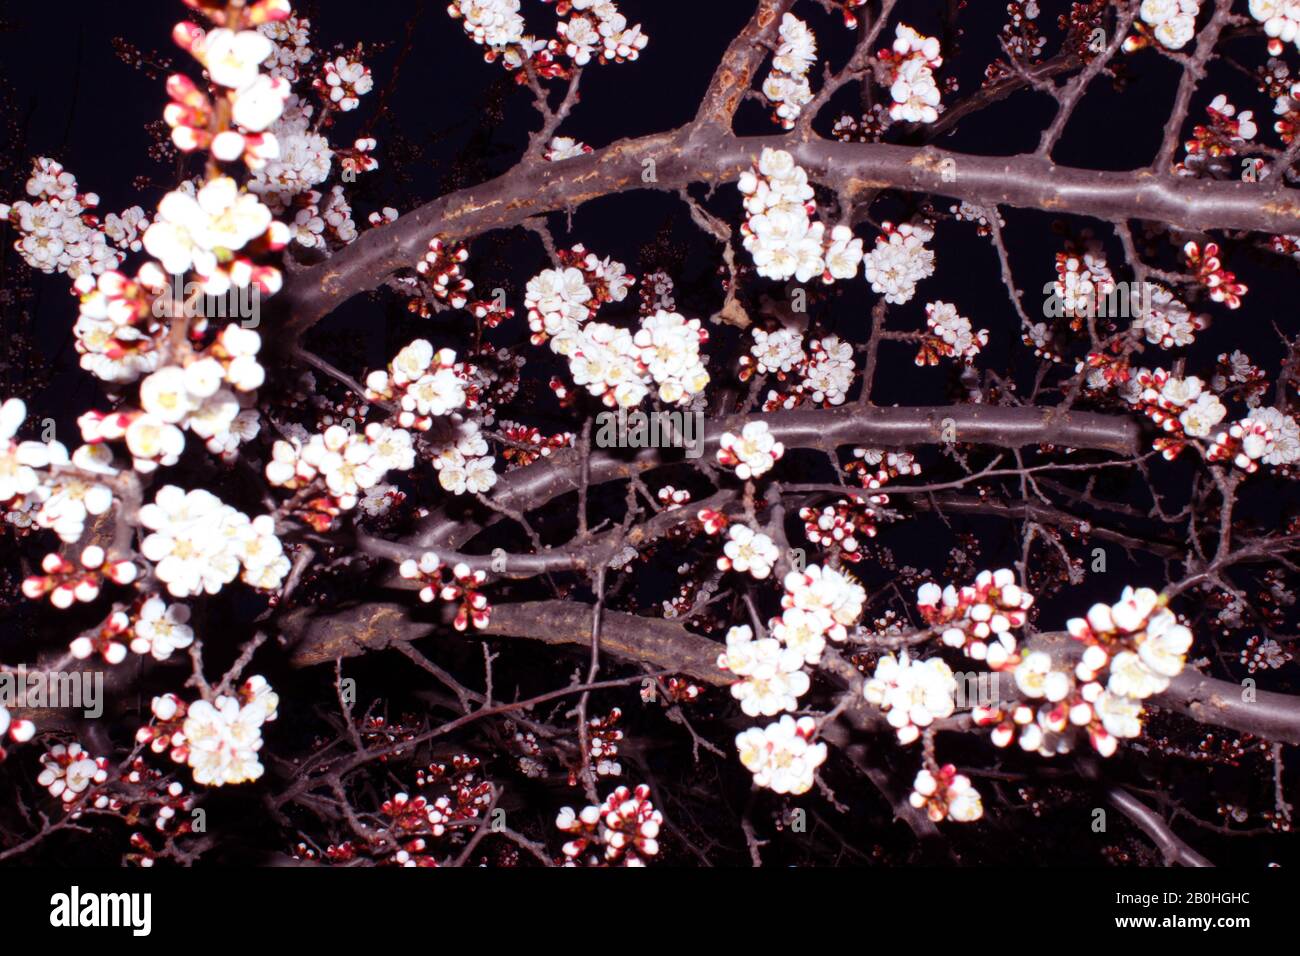 Primer plano cereza flor sobre fondo negro - imagen de stock. Brotes japoneses de sakura en flor en el cielo oscuro con espacio de copia. Foto de stock